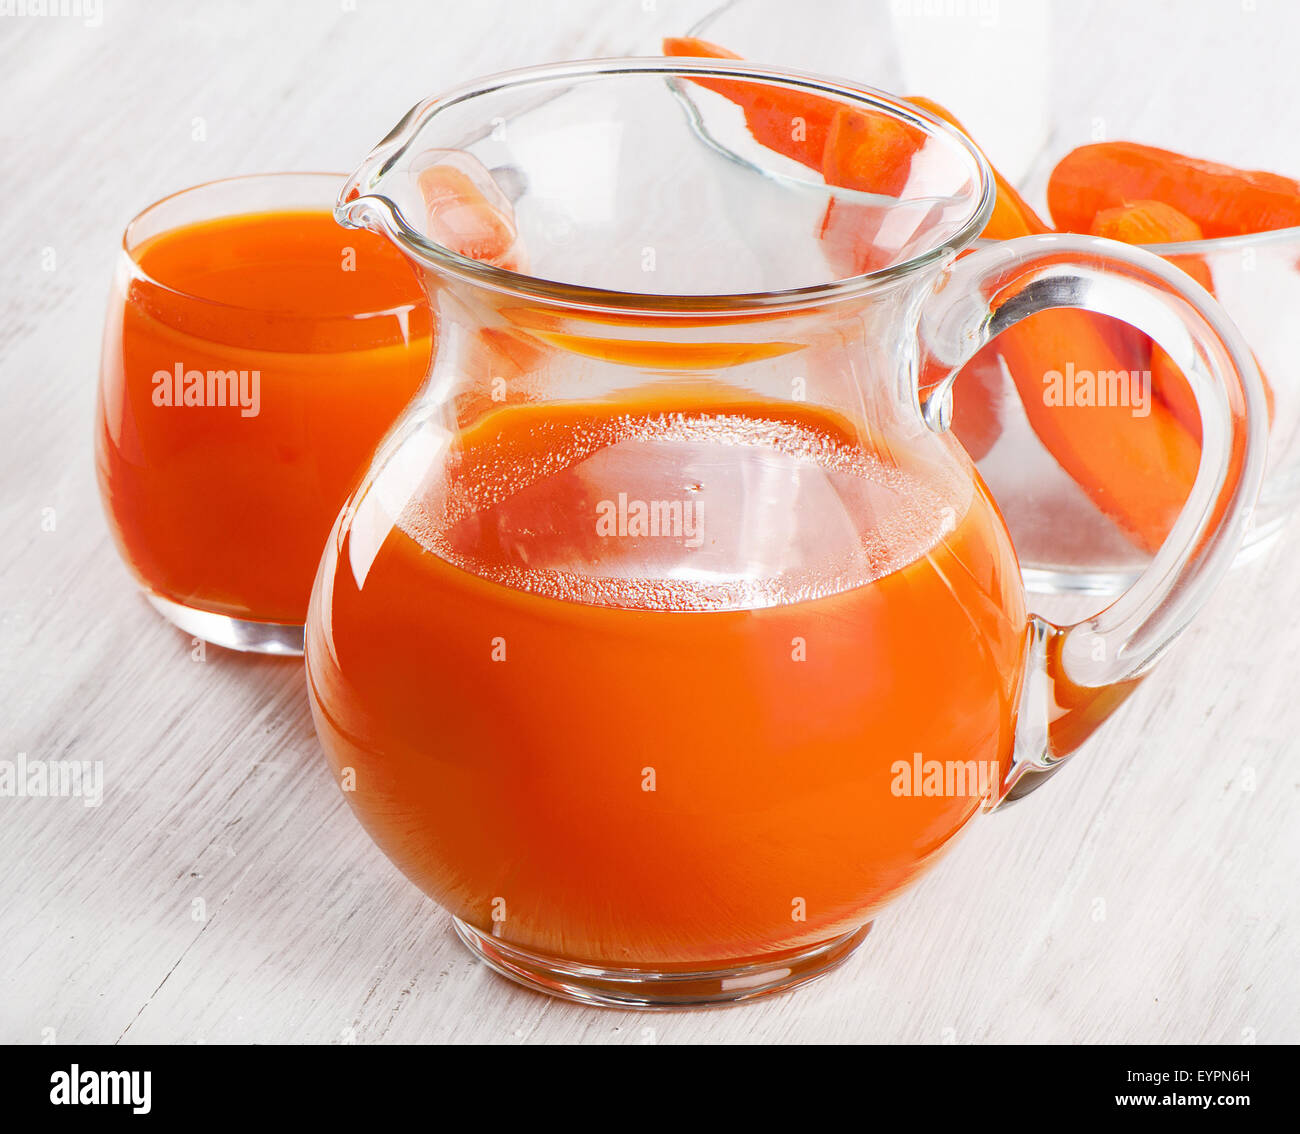 Le jus de carotte dans une cruche en verre. Selective focus Banque D'Images